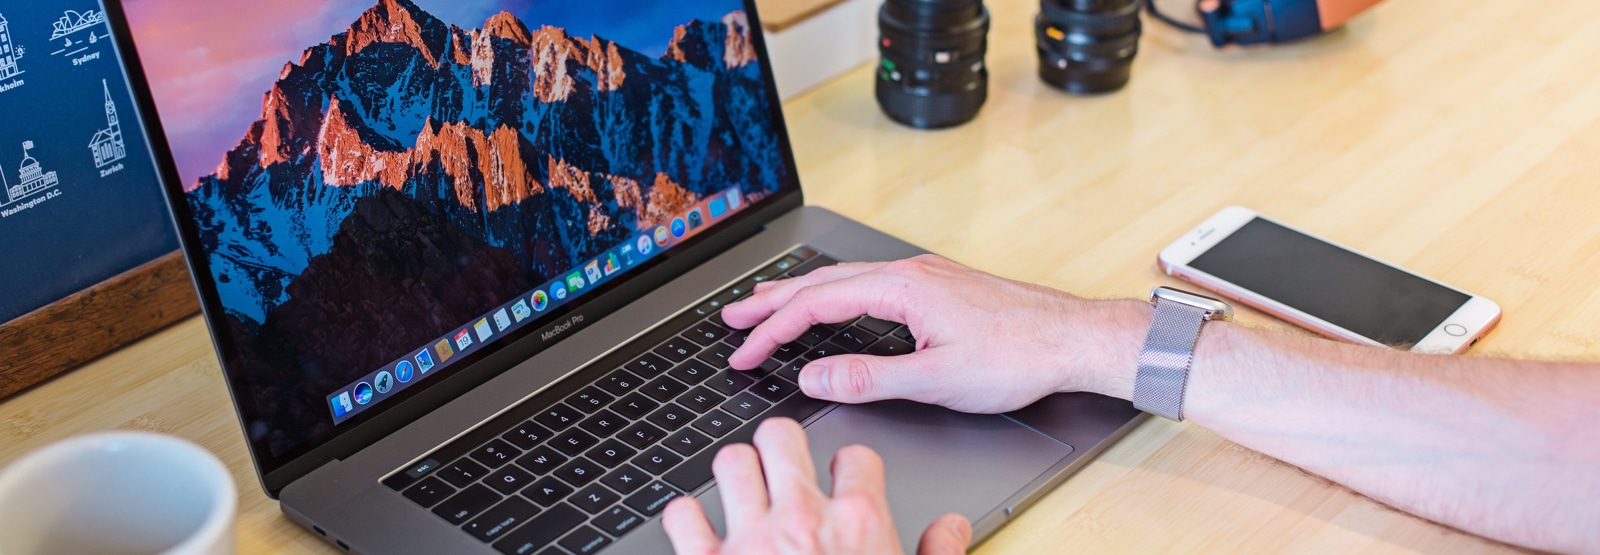 2ehands MacBook Pro 15 inch kopen? Lees hier de voordelen!